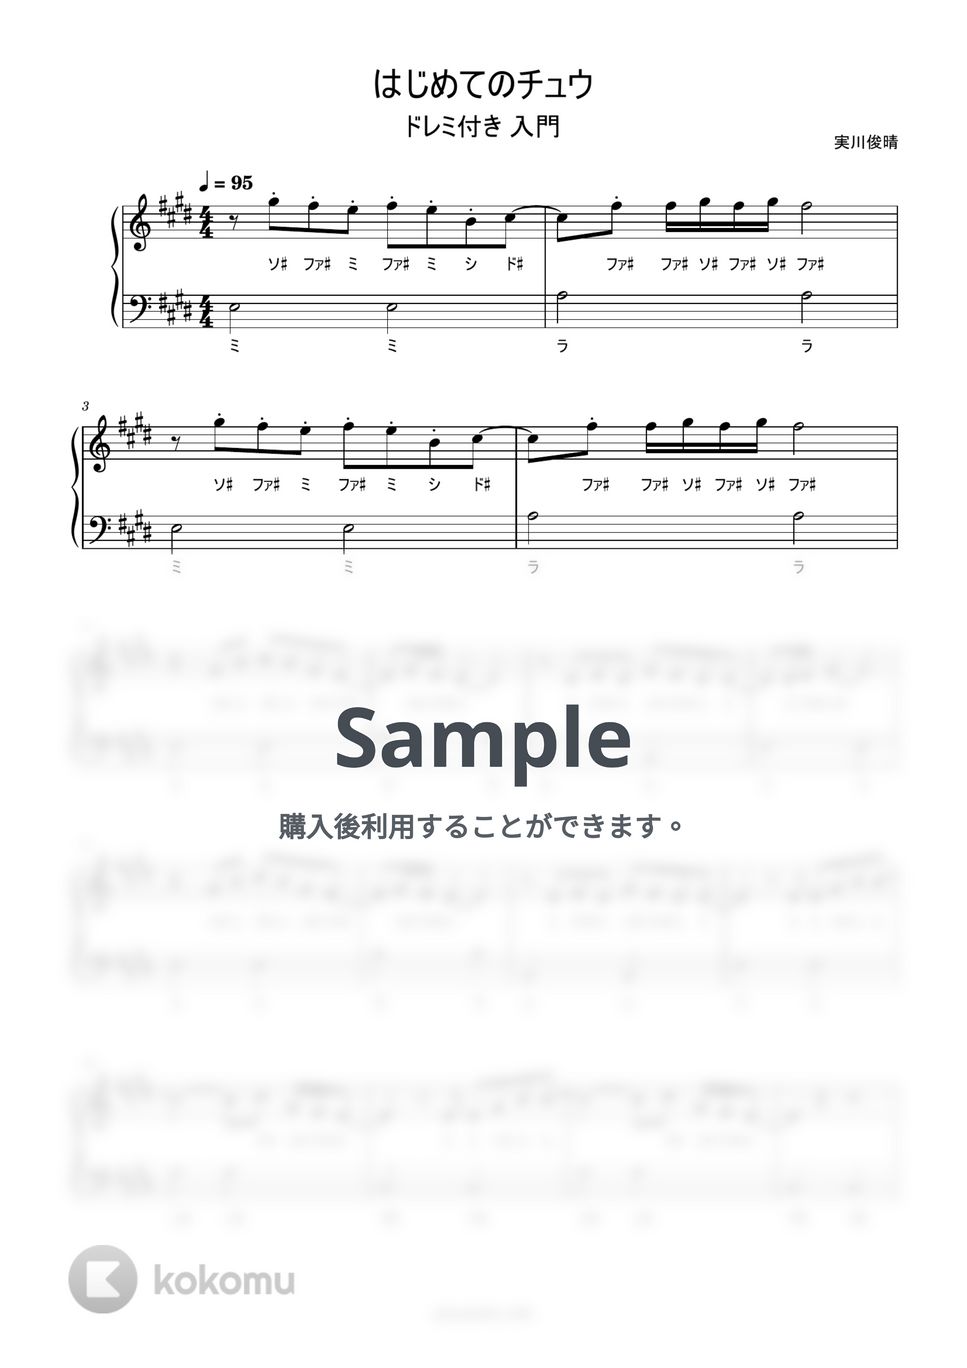 あんしんパパ - はじめてのチュウ (ドレミ付き/簡単楽譜) by ピアノ塾